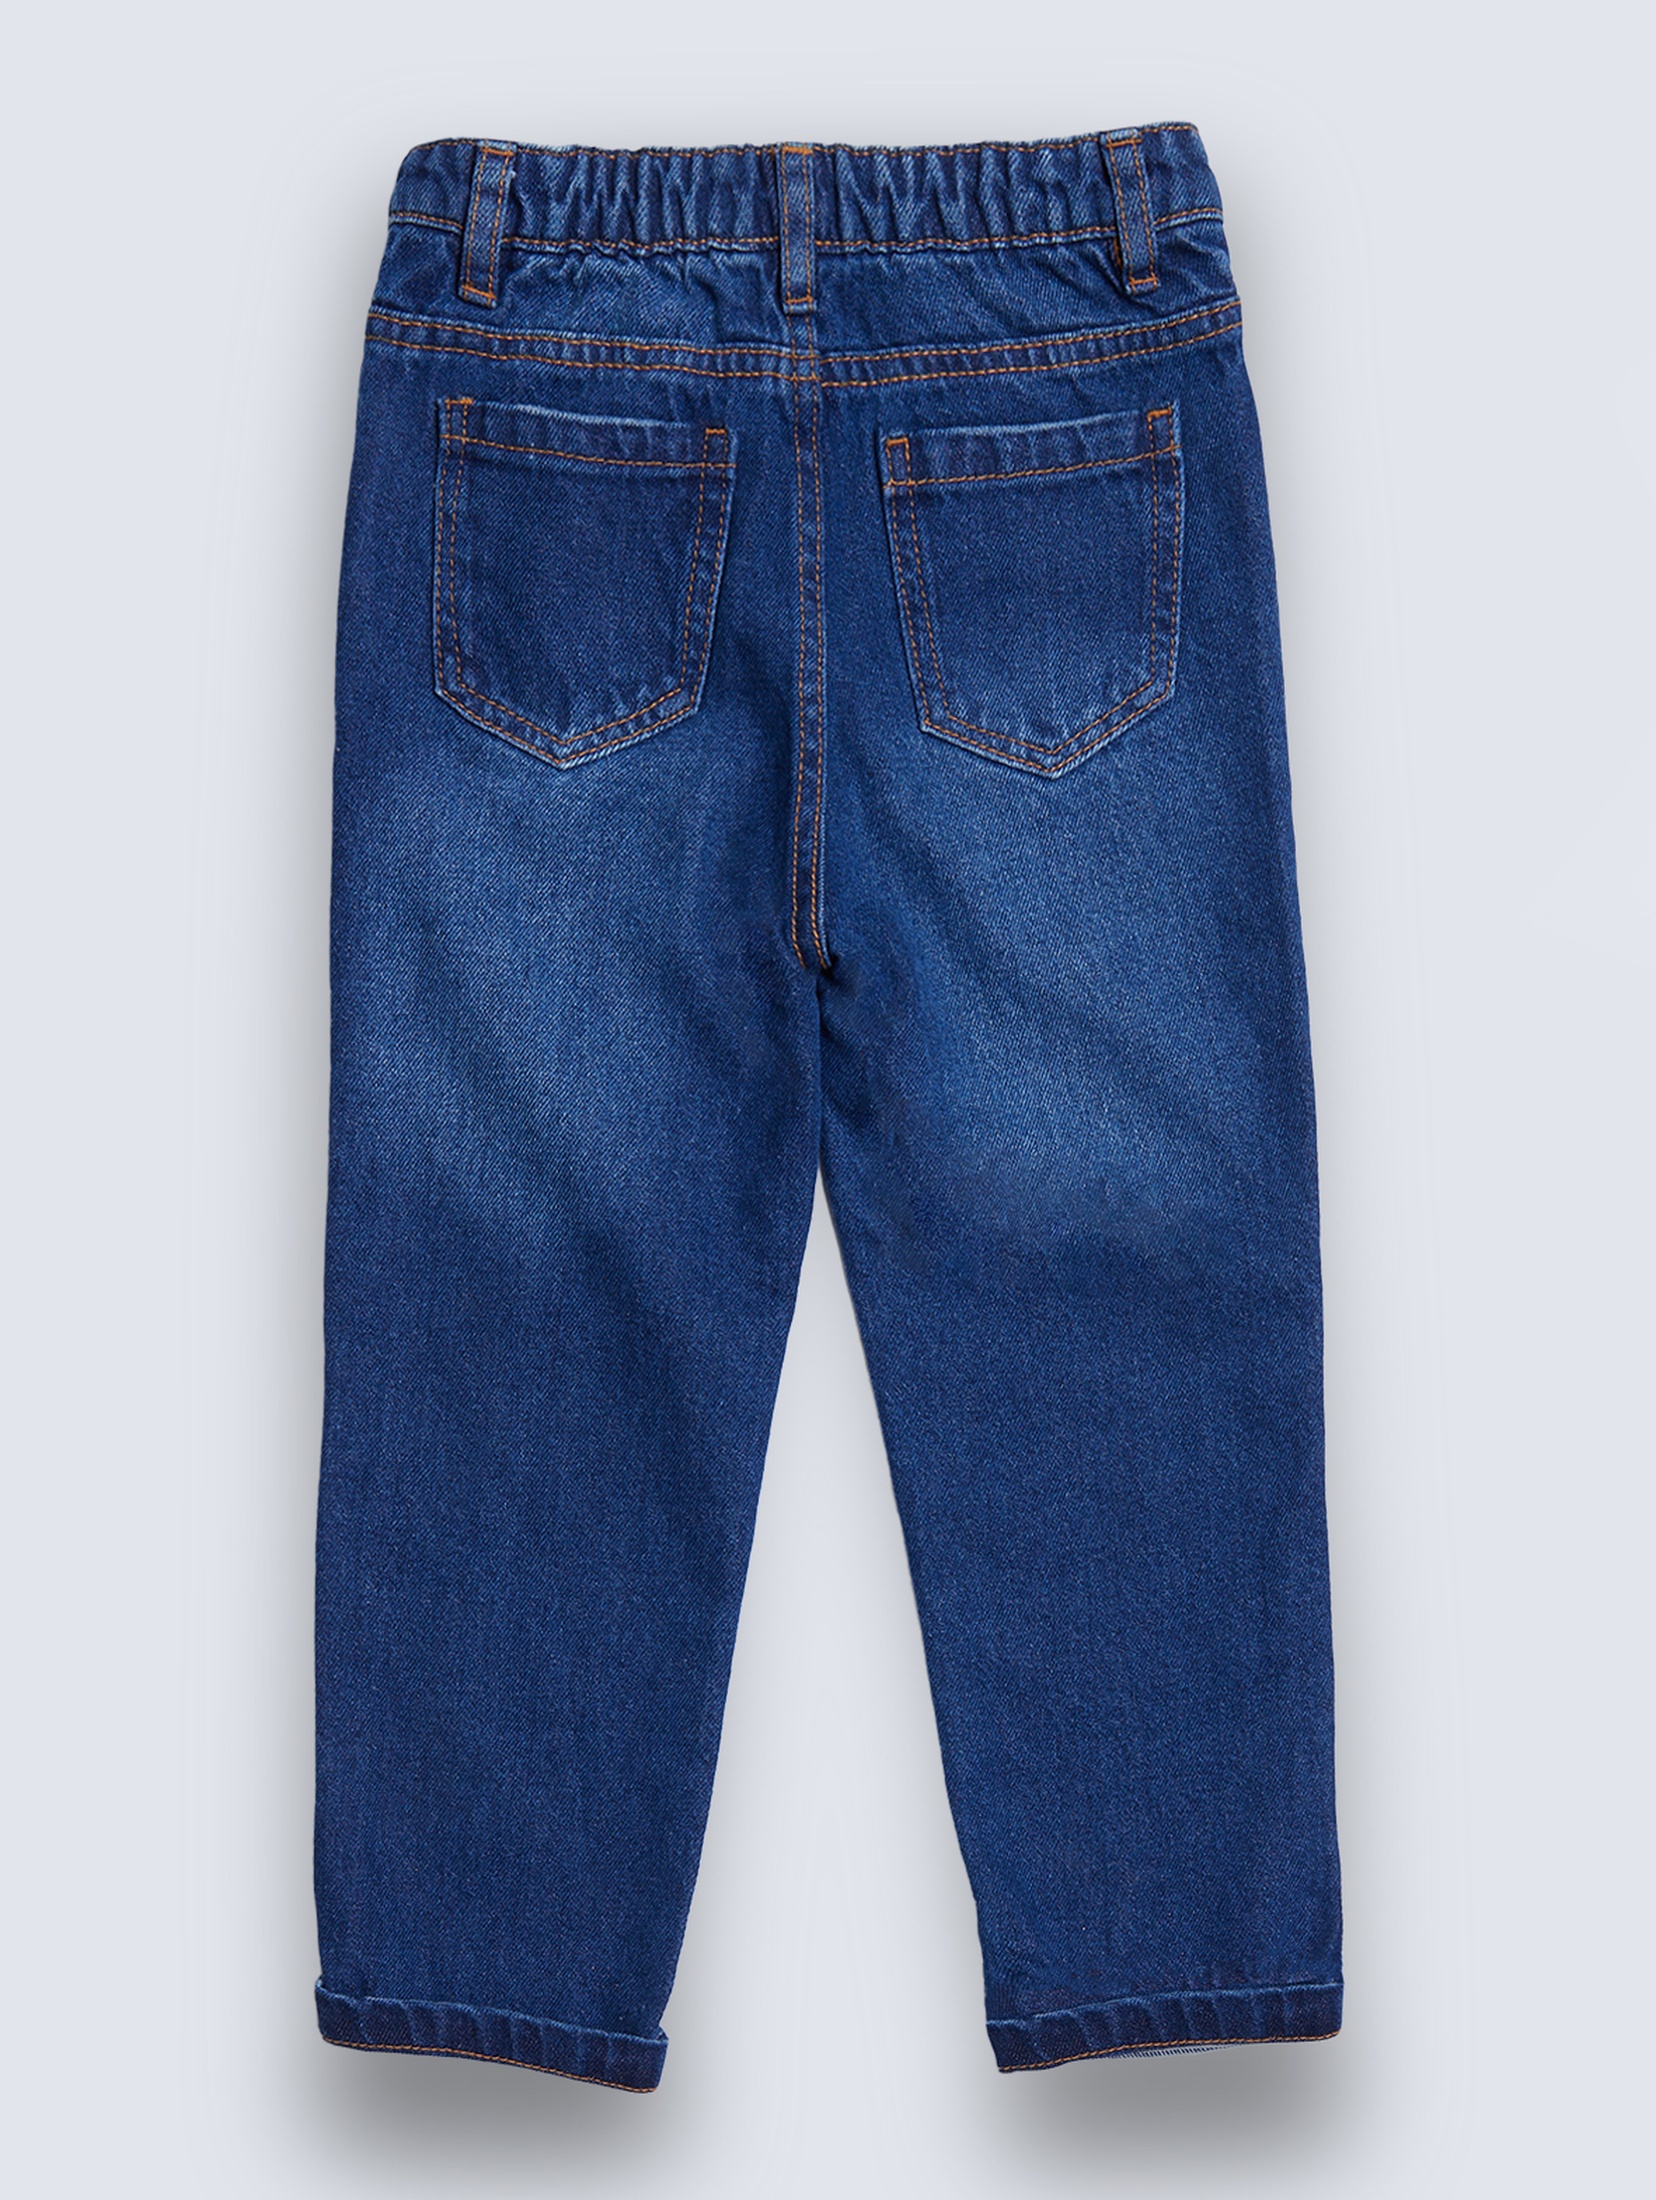 Niebieskie spodnie jeansowe dla niemowlaka - unisex - Limited Edition